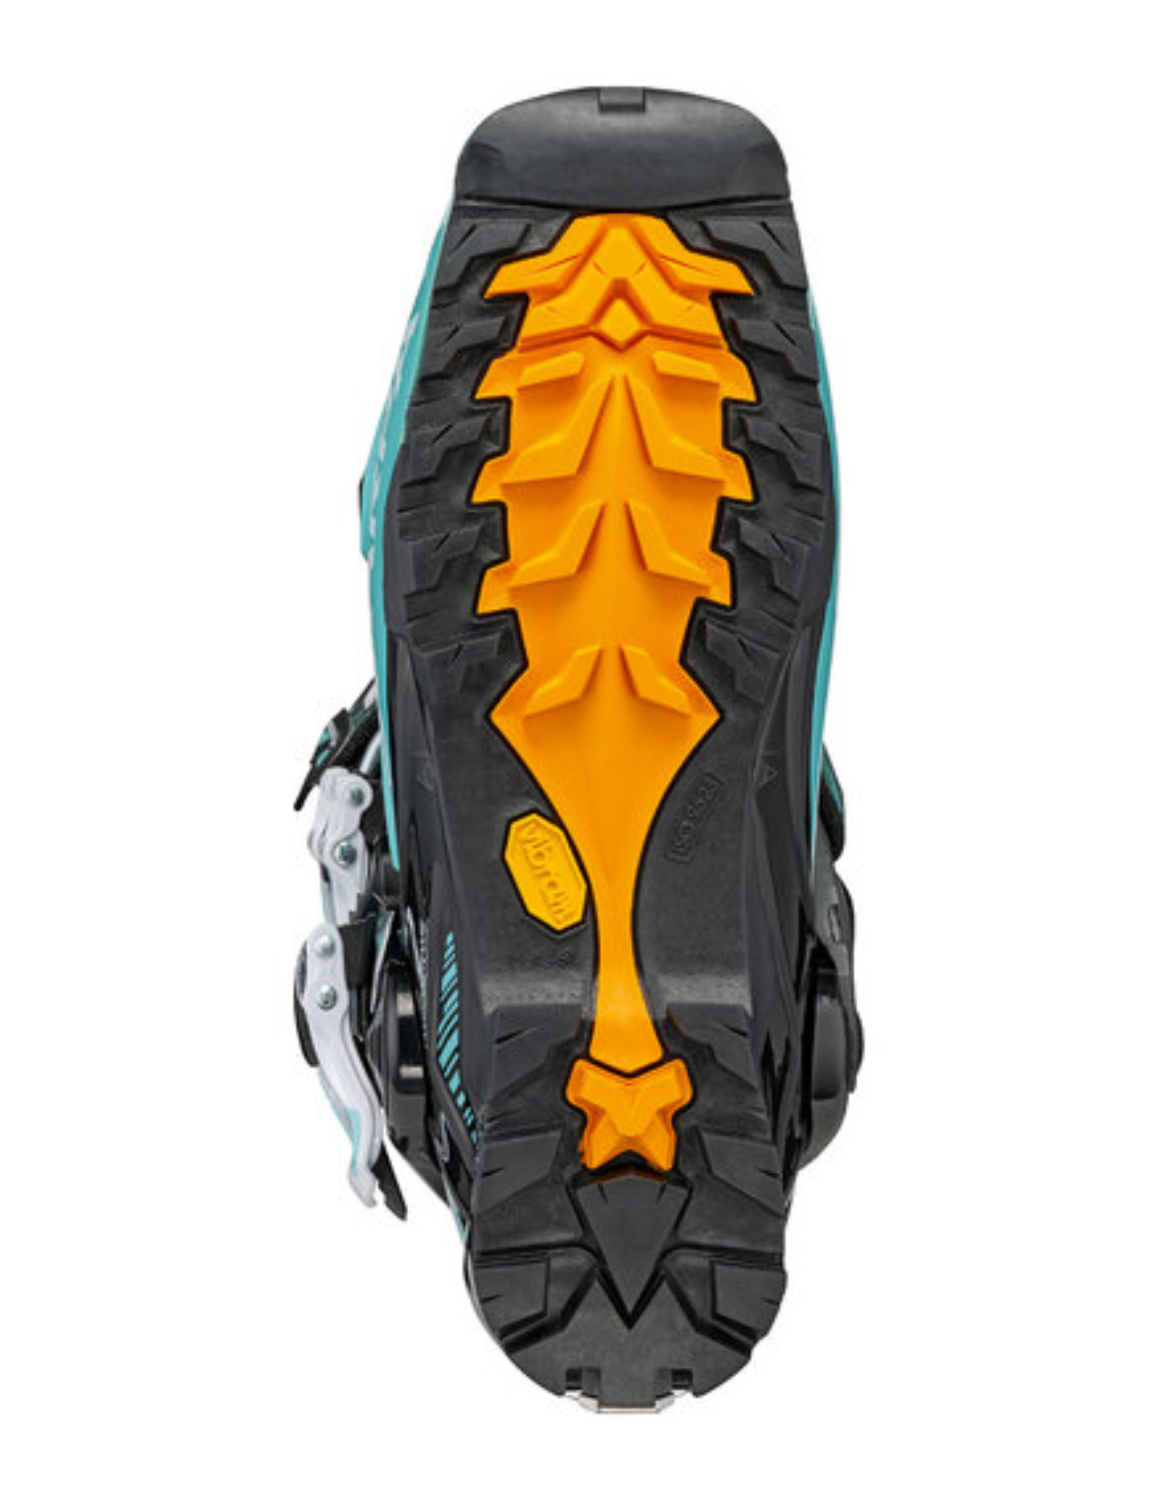 Chaussures de ski de randonnée SCARPA Gea pour femme avec semelle Vibram